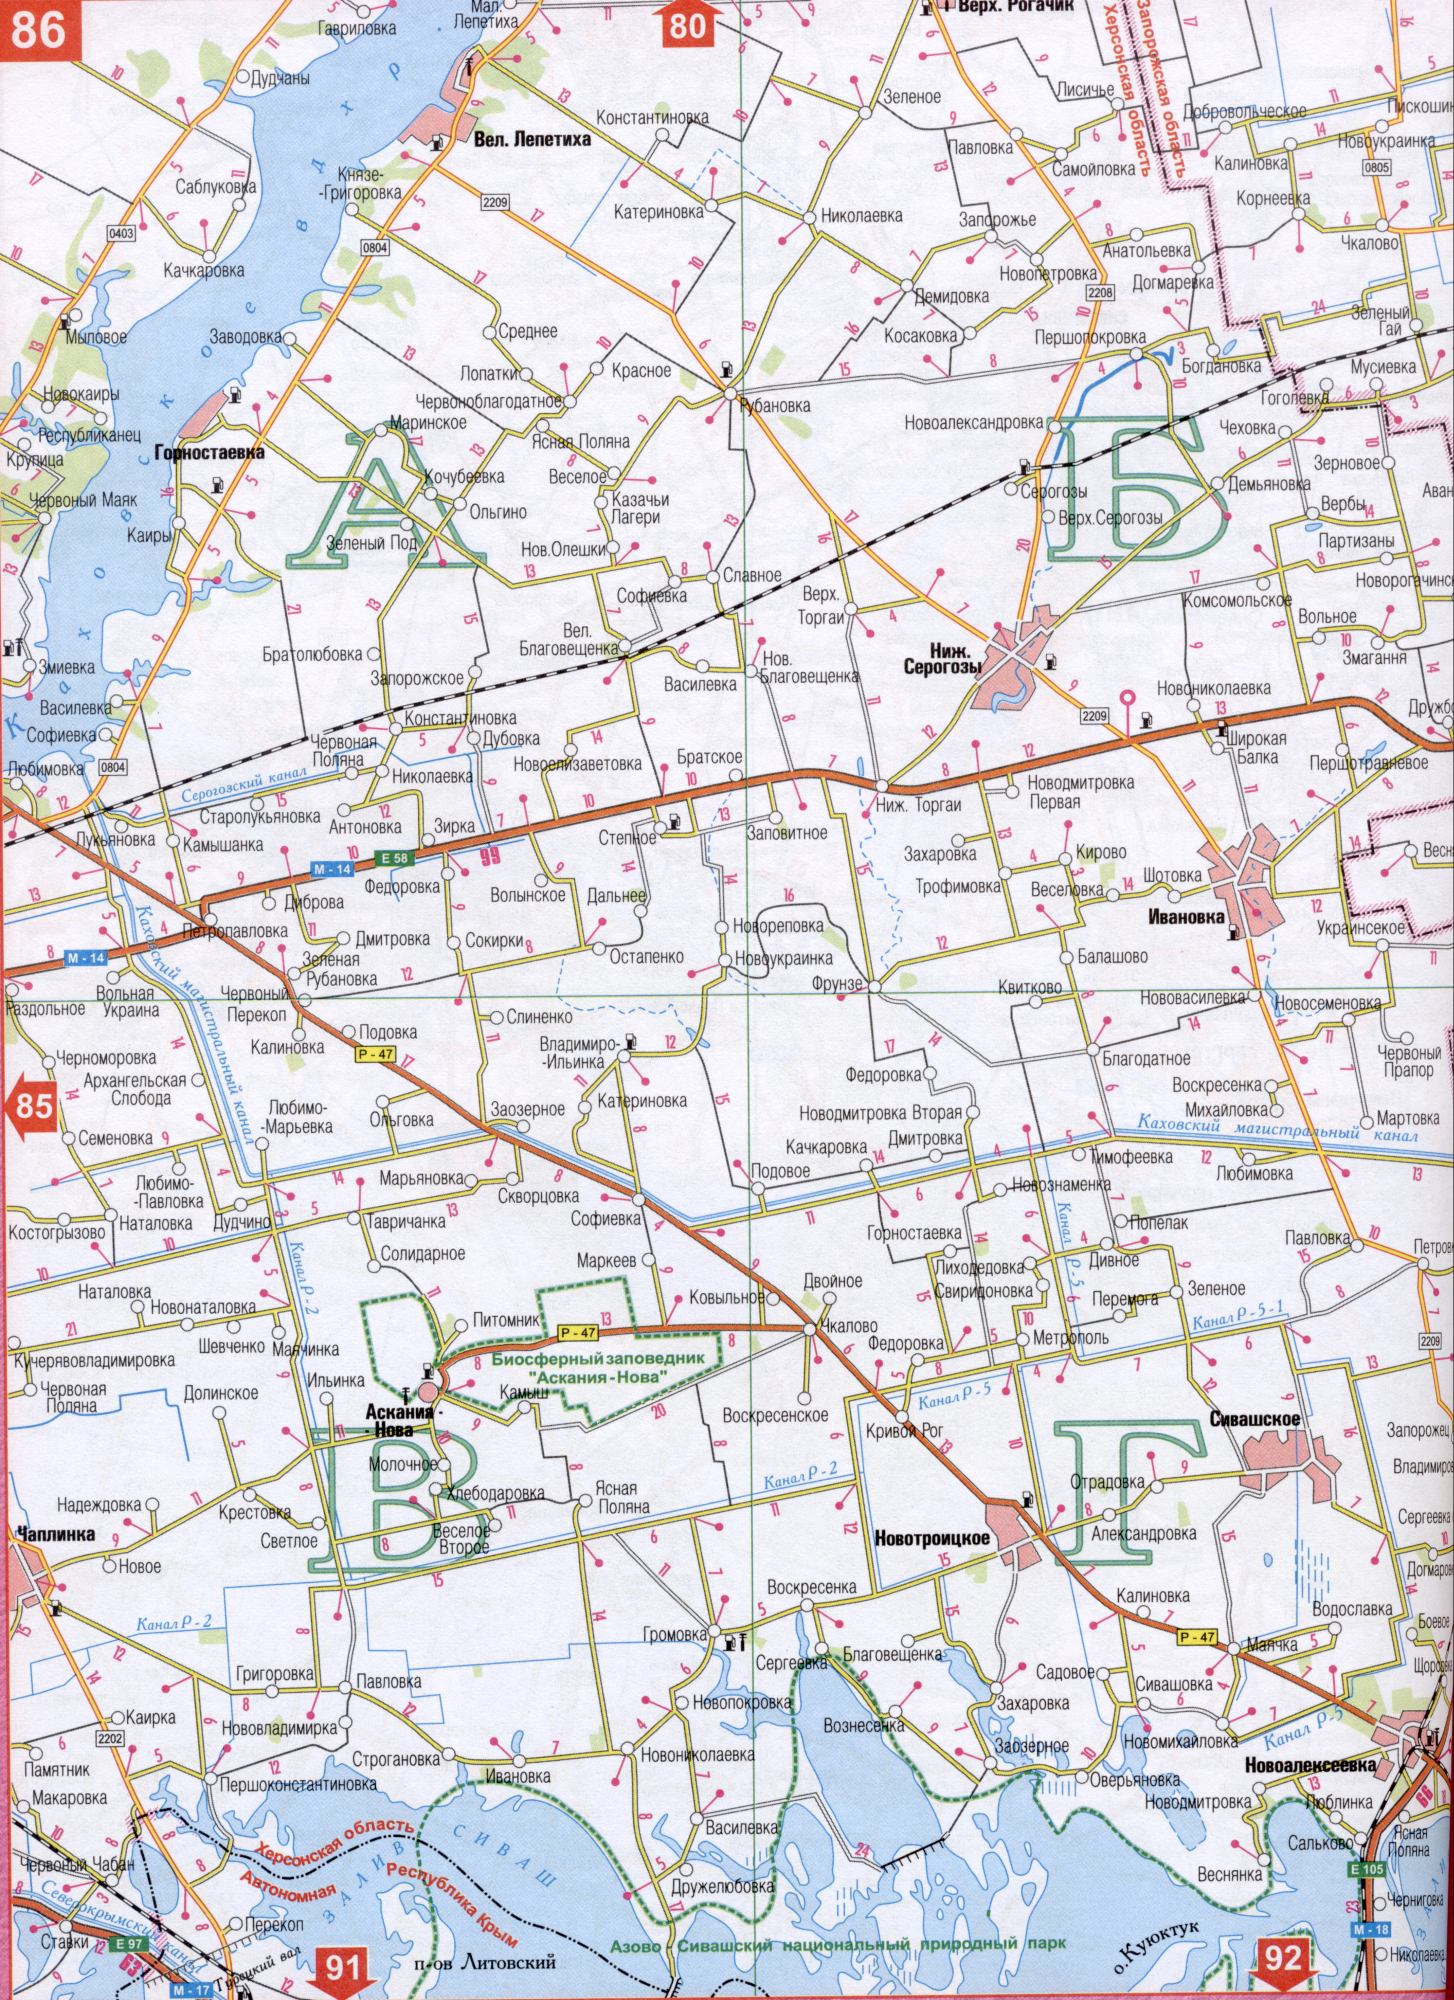 Карта Херсонской области Украины (областной центр г.Херсон). Скачать бесплатно подробную карту автомобильных дорог, B0 - Каховский магистральный канал